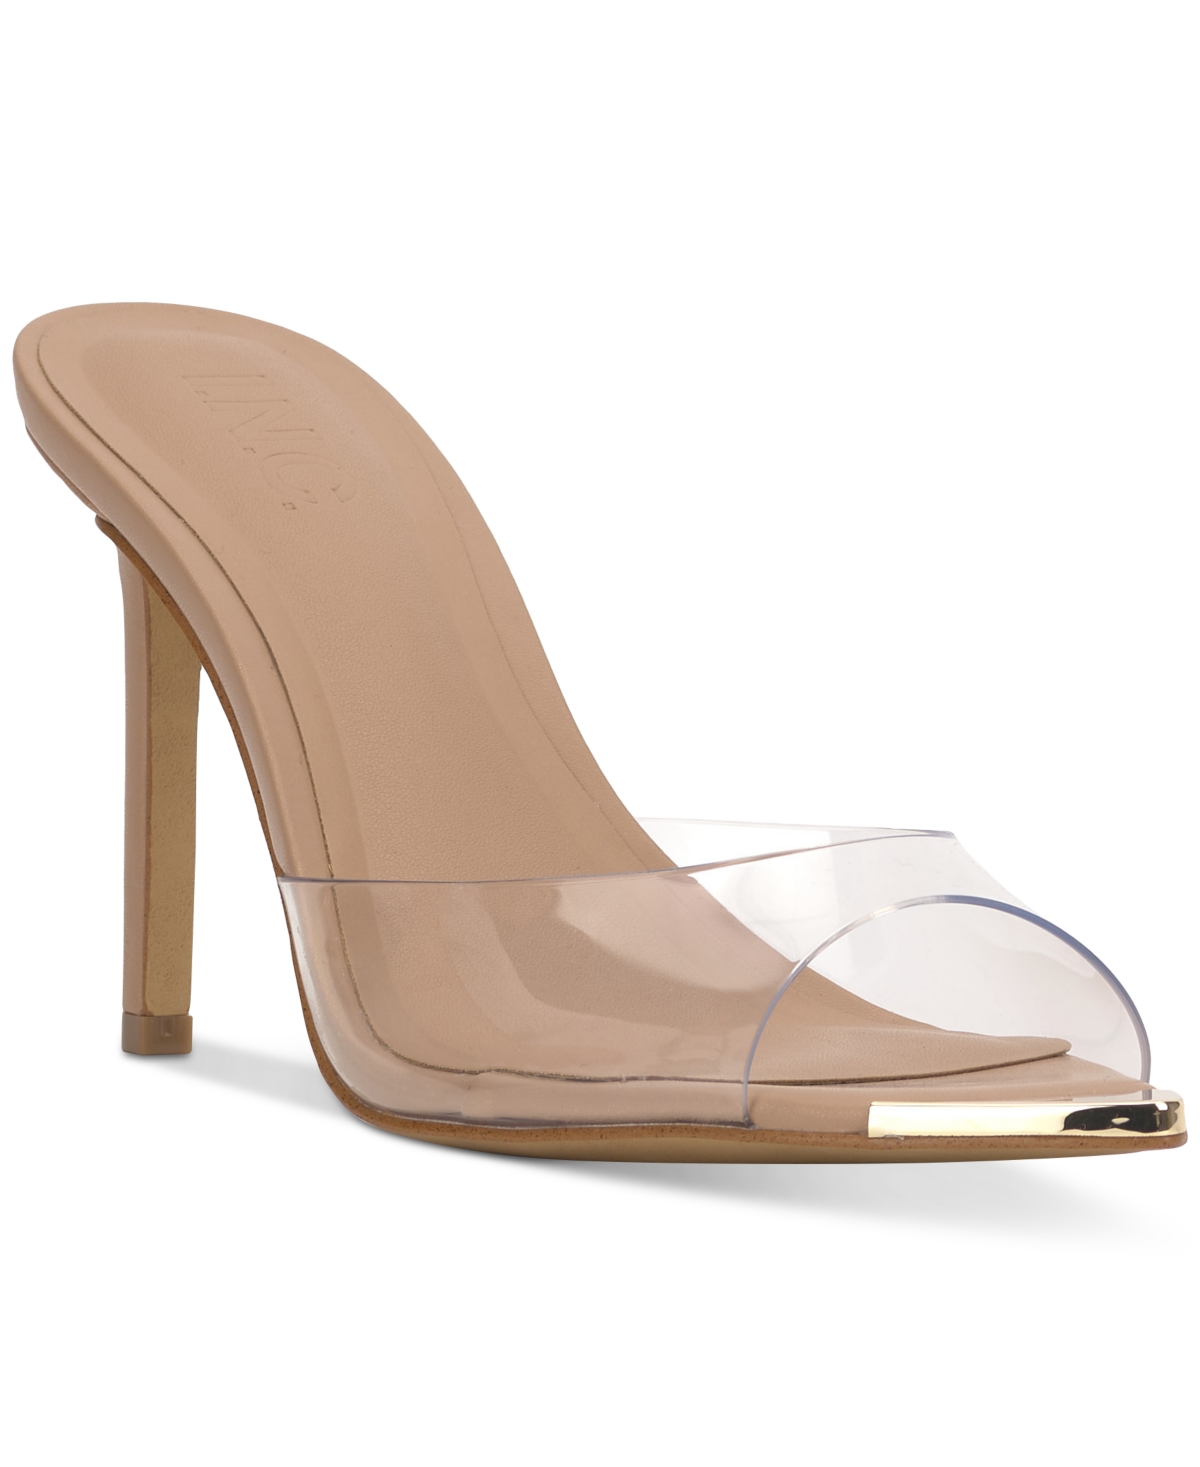 Amra Dress Slide Sandals, Created for Macy's - Gold Snake Print